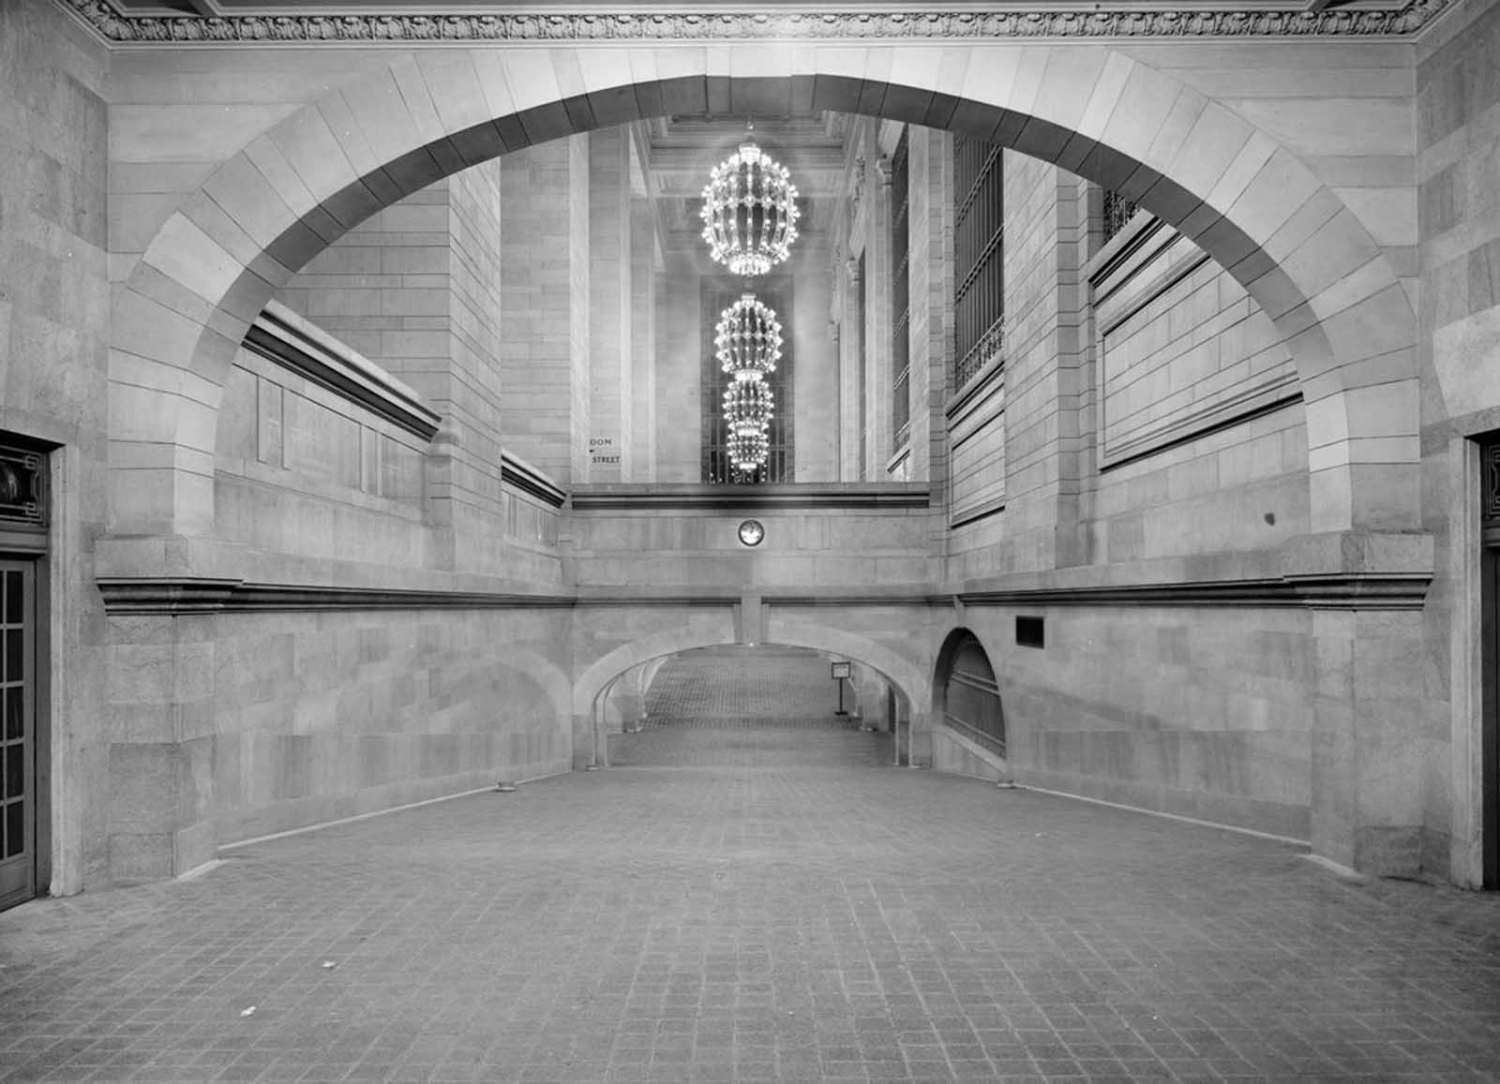 Спуск з підземки до приміського вестибюлю, вокзал Гранд Сентрал, Нью-Йорк, бл. 1912 р.